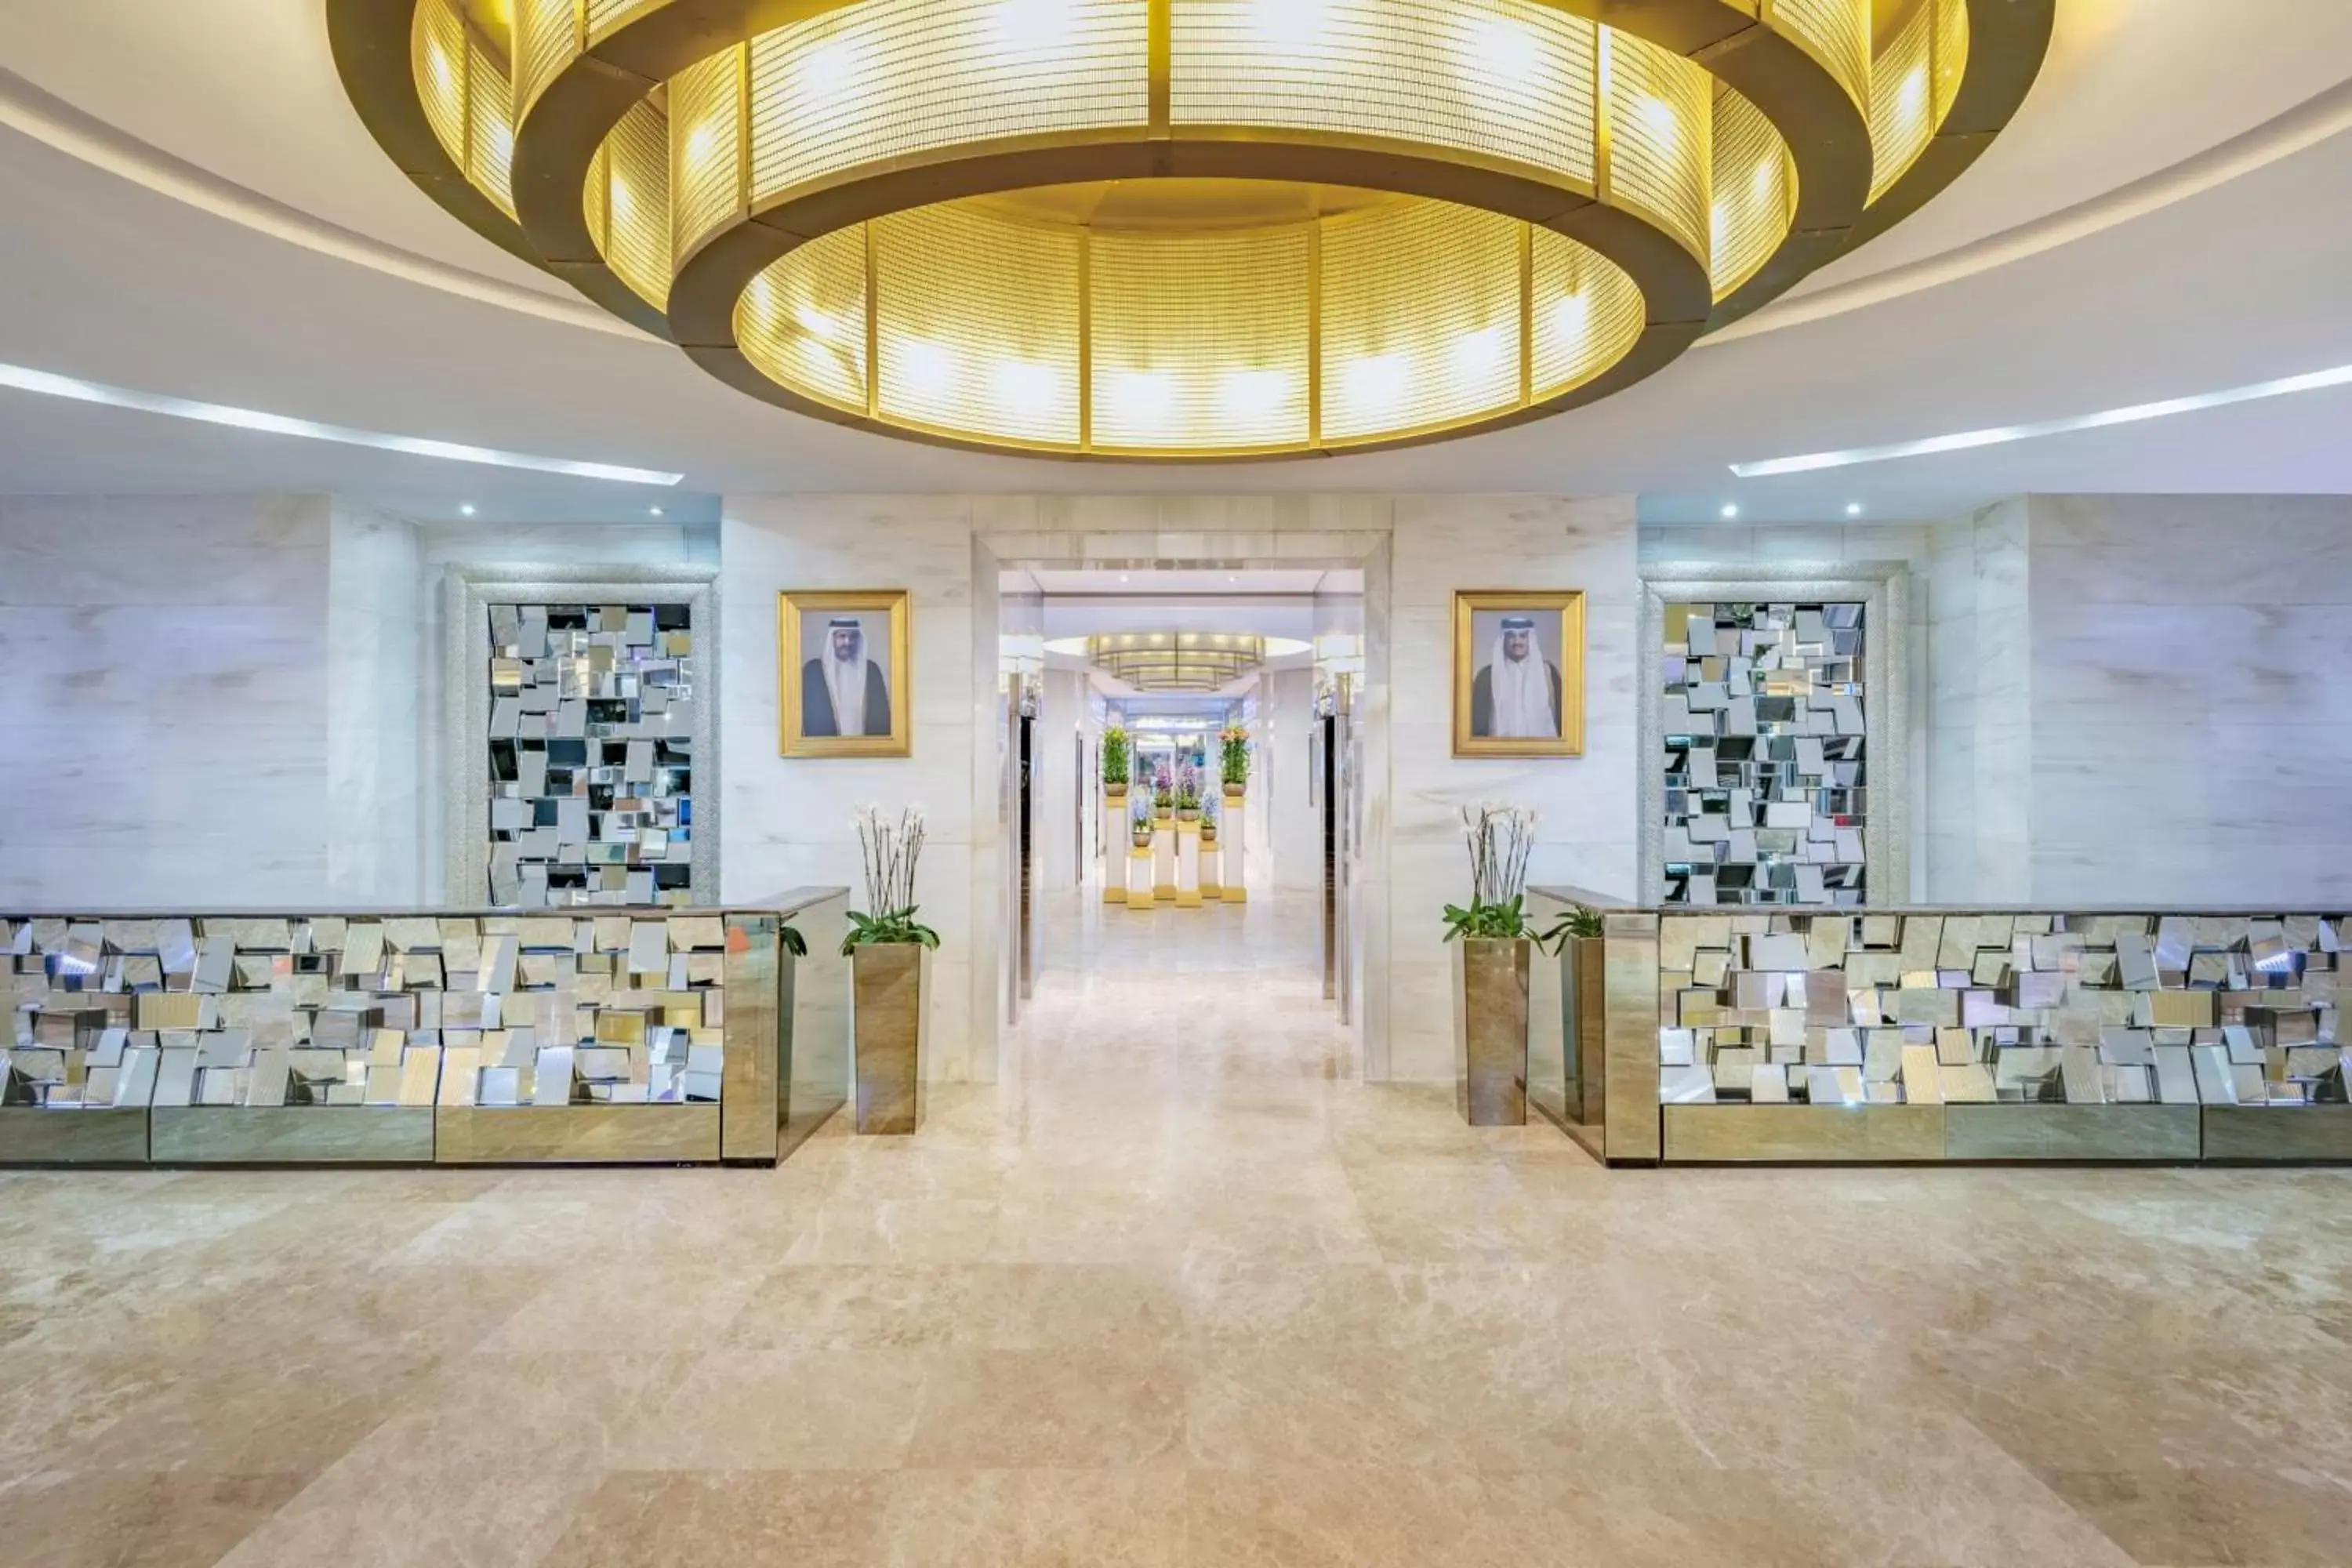 Lobby or reception in Qabila Westbay Hotel by Marriott